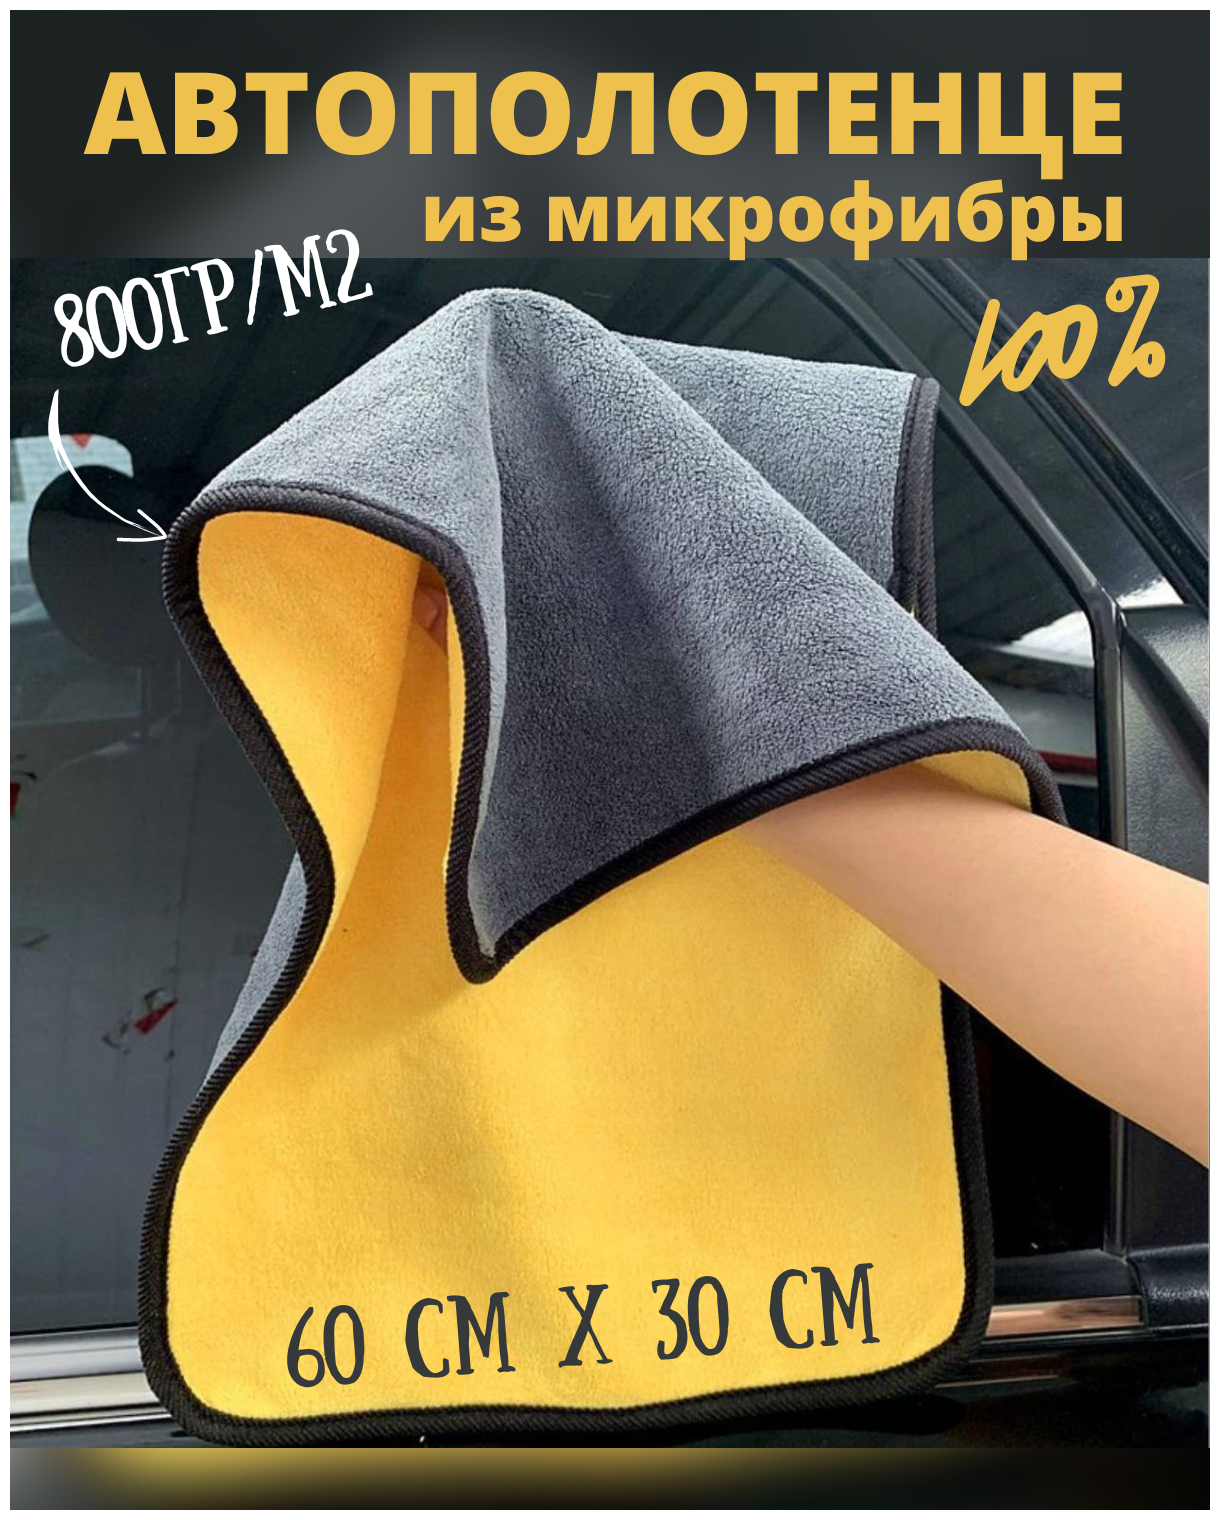 Тряпка автополотенце для автомобиля из микрофибры 60х30 см двусторонняя — купить в интернет-магазине по низкой цене на Яндекс Маркете